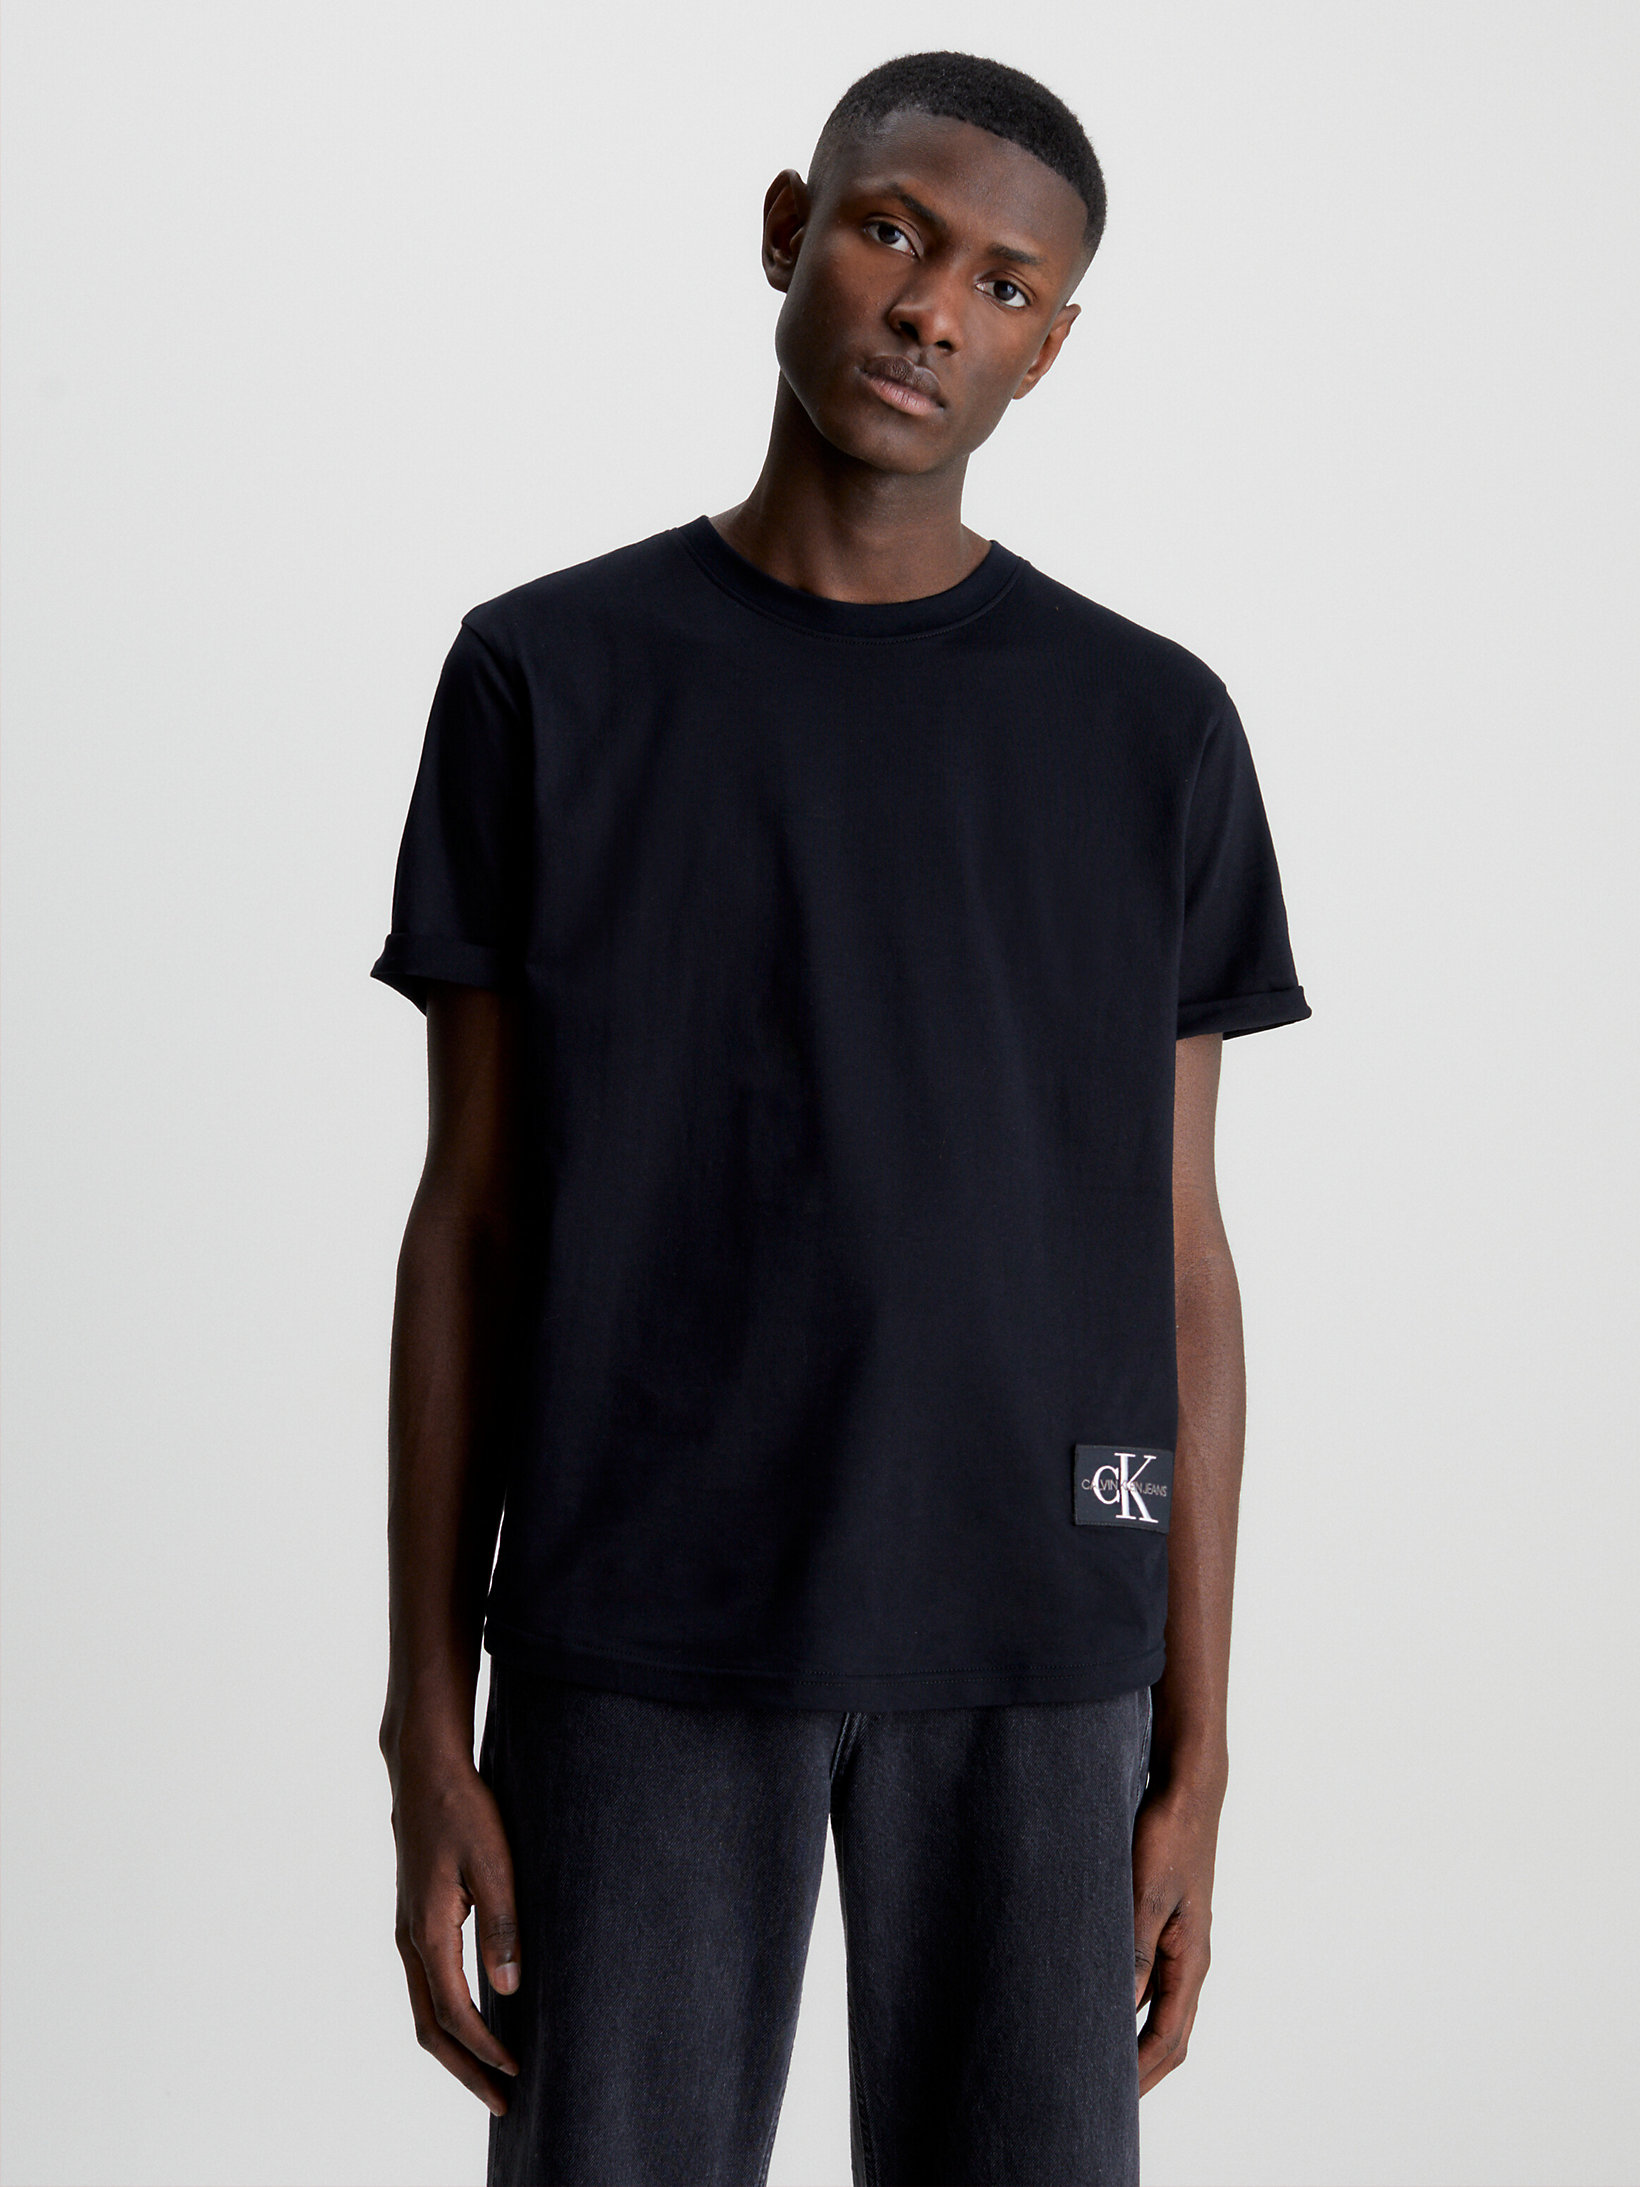 CK Black > Badge-T-Shirt Aus Bio-Baumwolle > undefined Herren - Calvin Klein